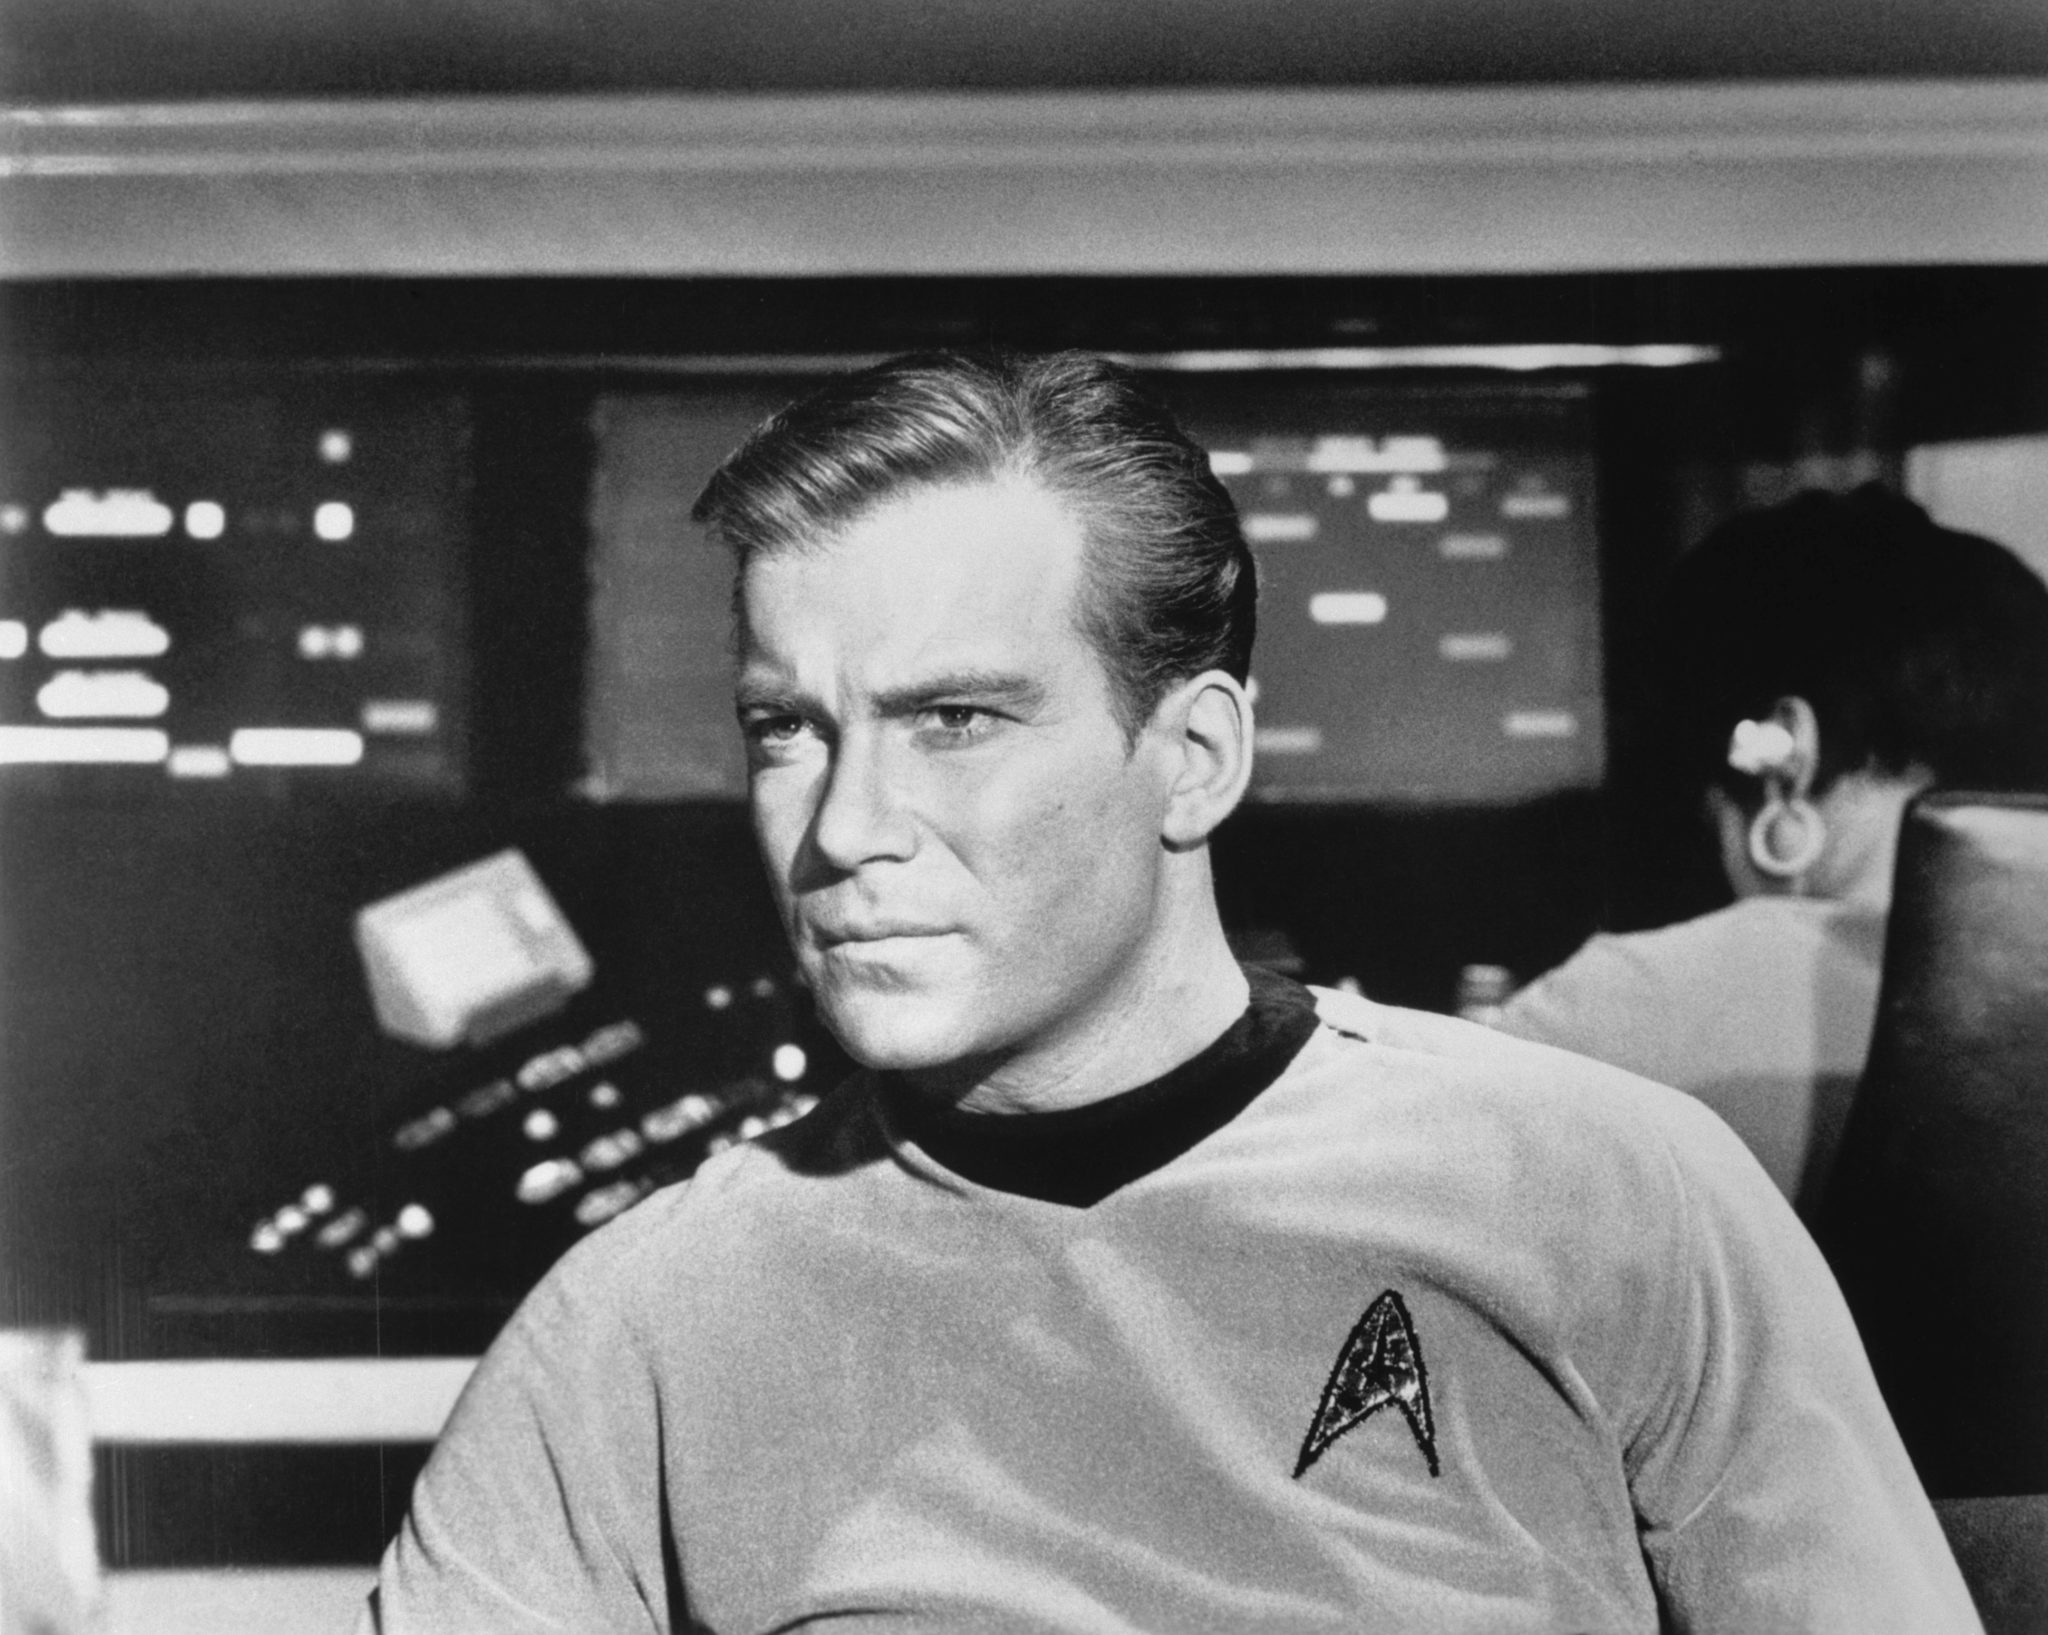 William Shatner as Captain James Kirk during an episode of Star Trek